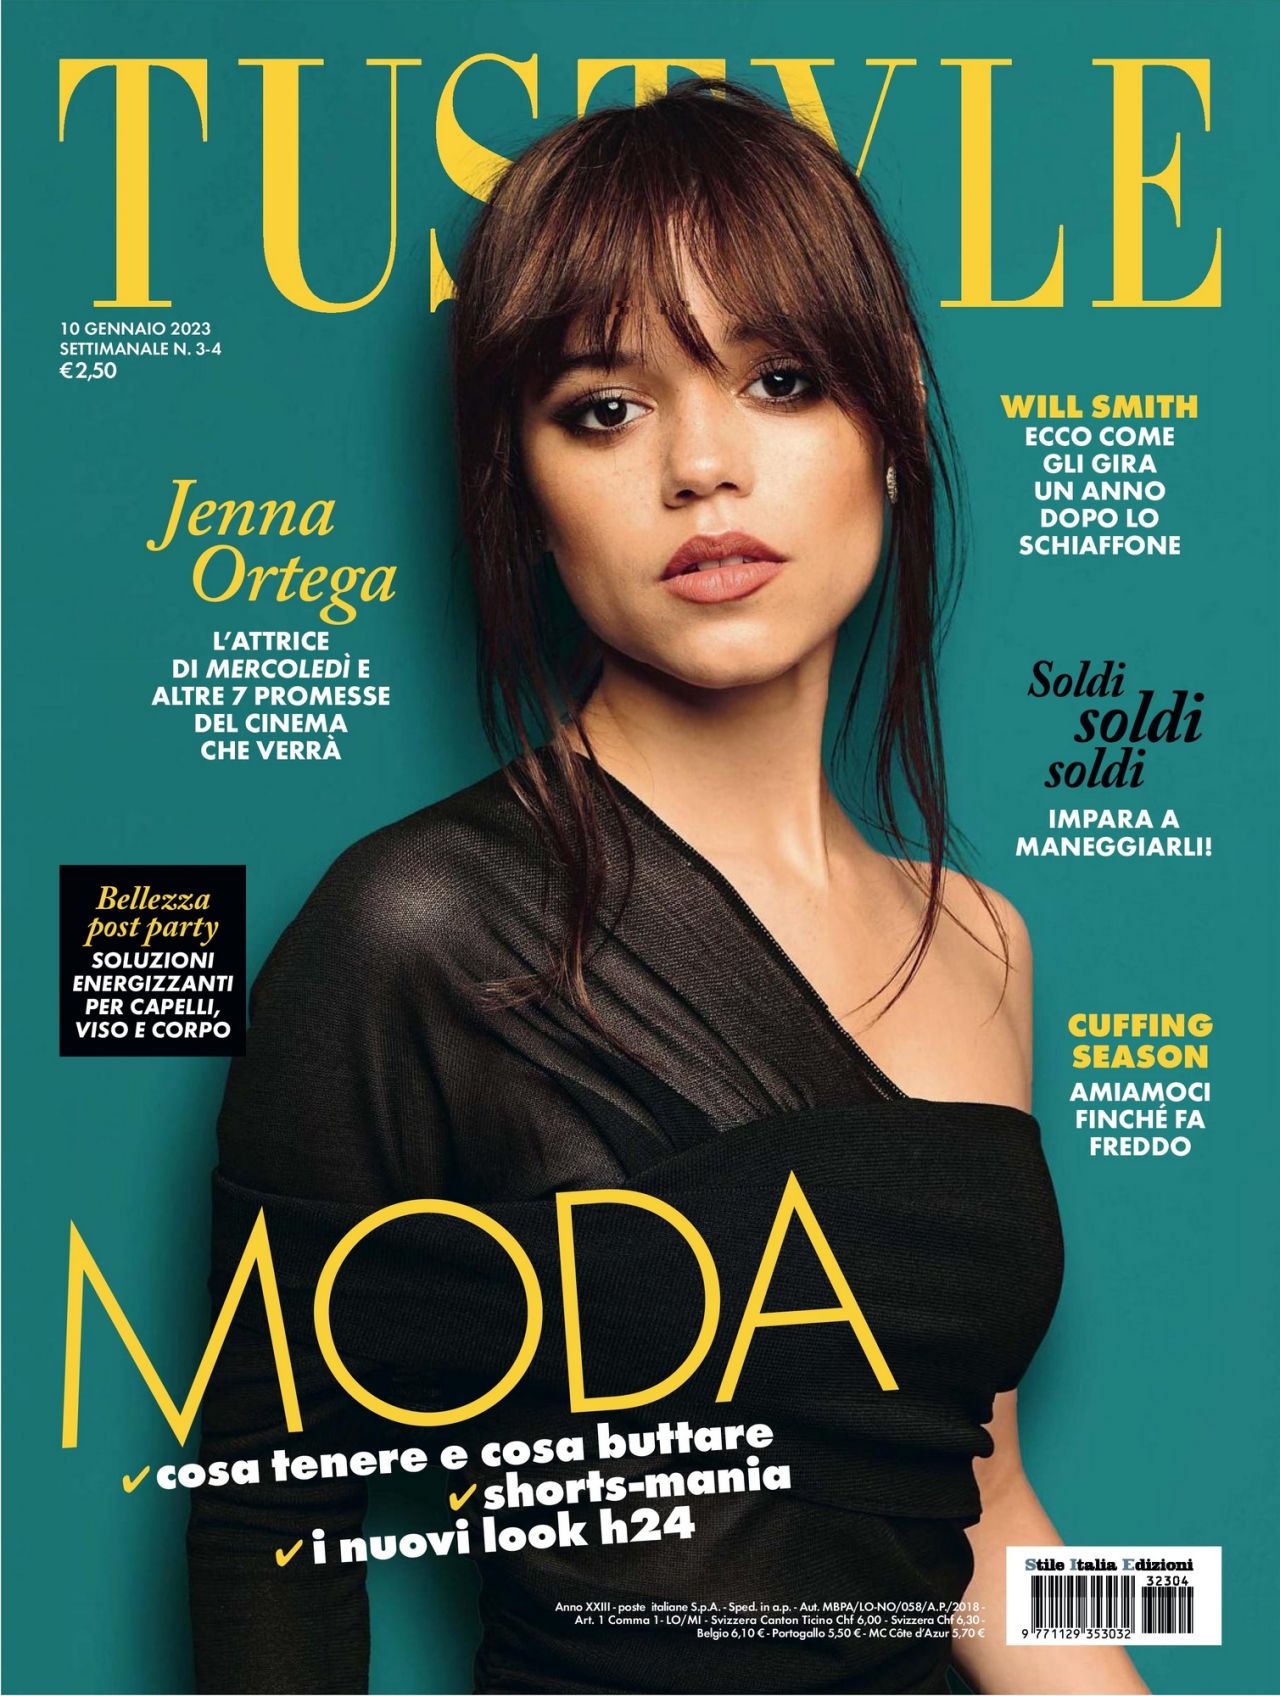 Jenna Ortega Tu Style Magazine 01 10 2023 Issue 3 